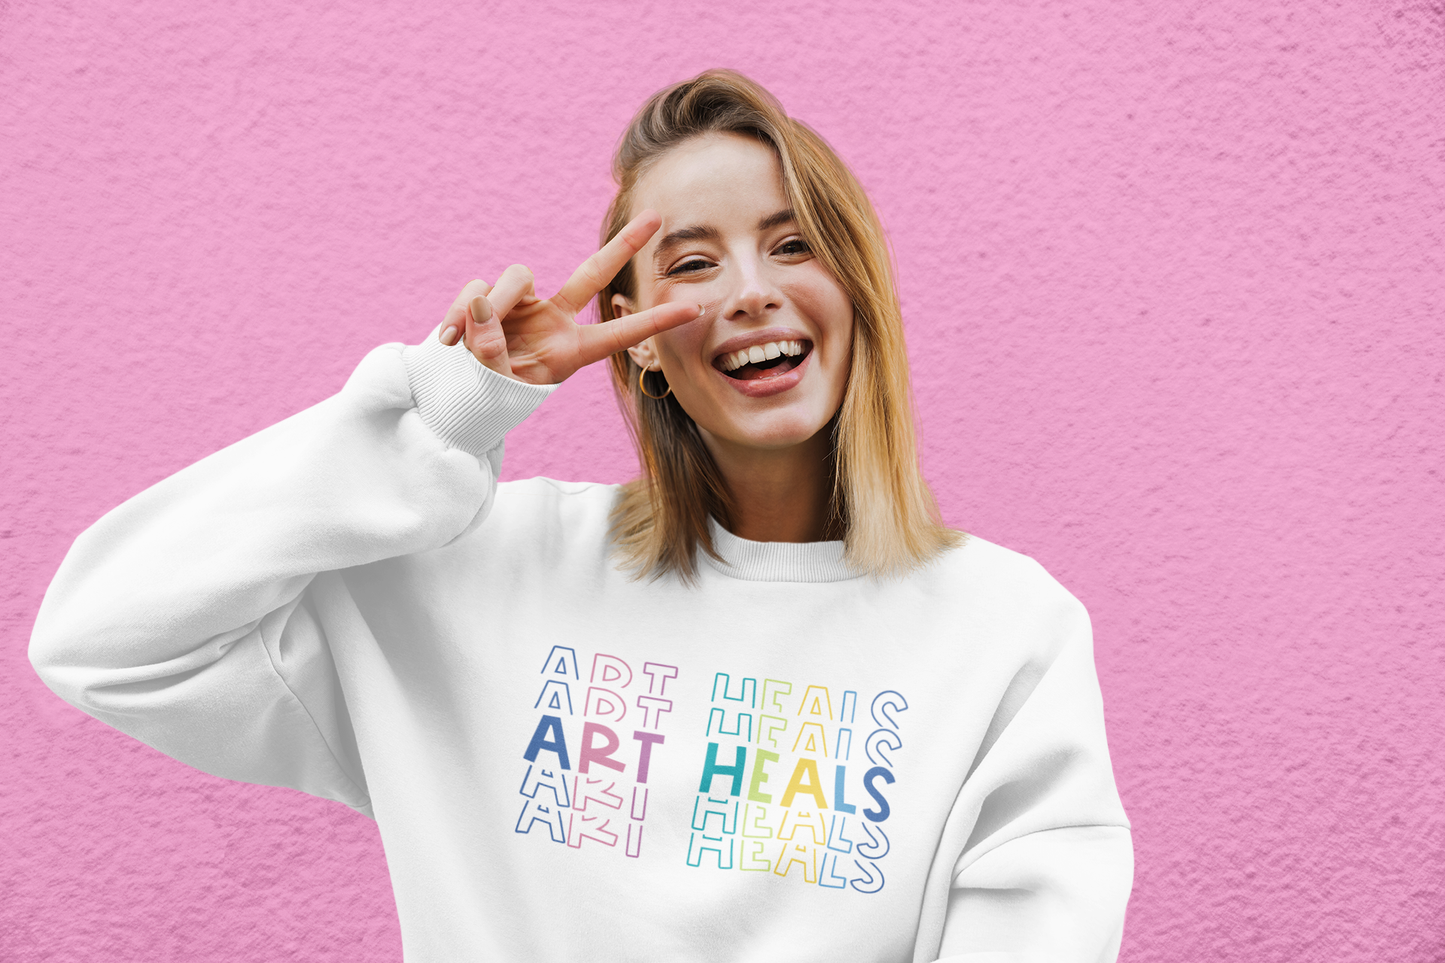 Art Heals Sweatshirt